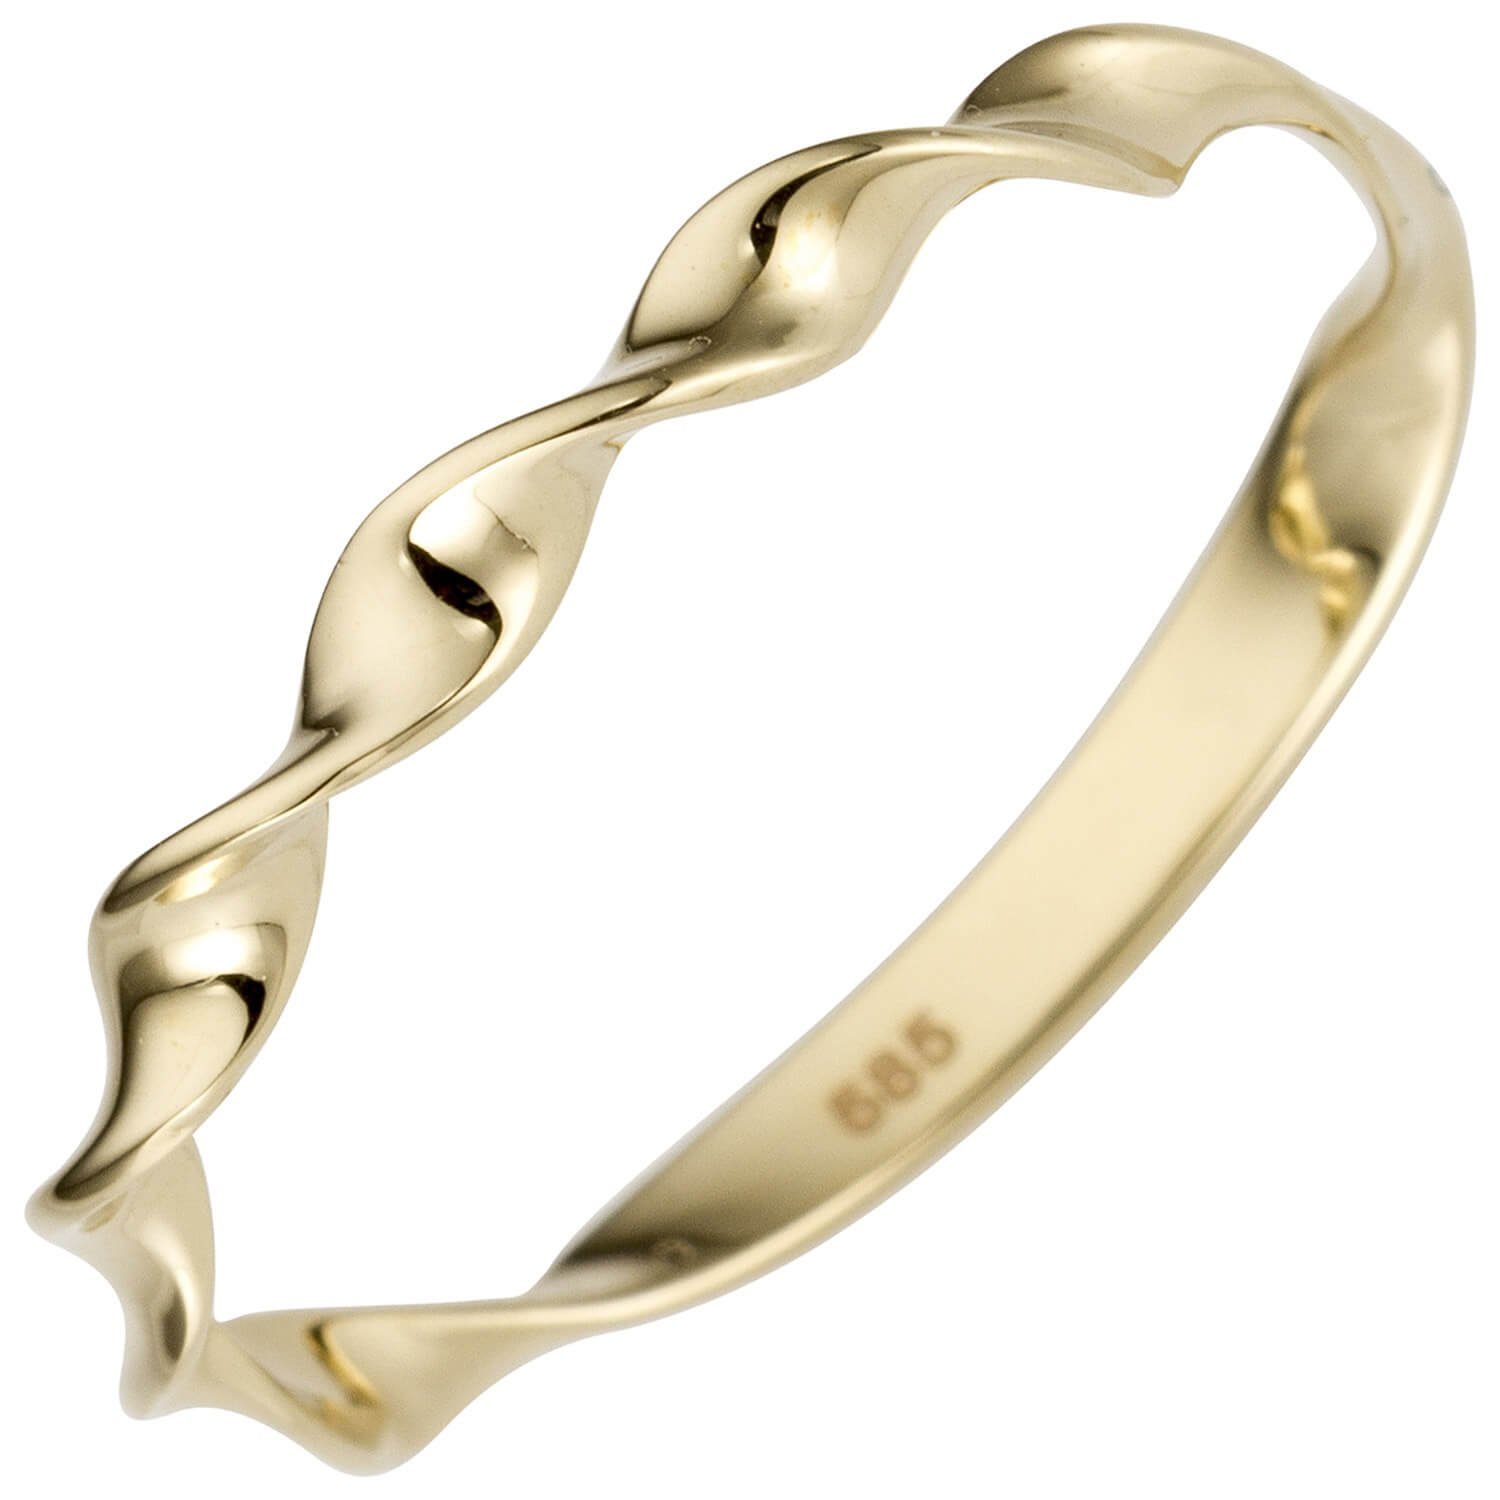 Schmuck Krone Goldring Ring aus 585 Gelbgold gedreht glänzend, Gold 585